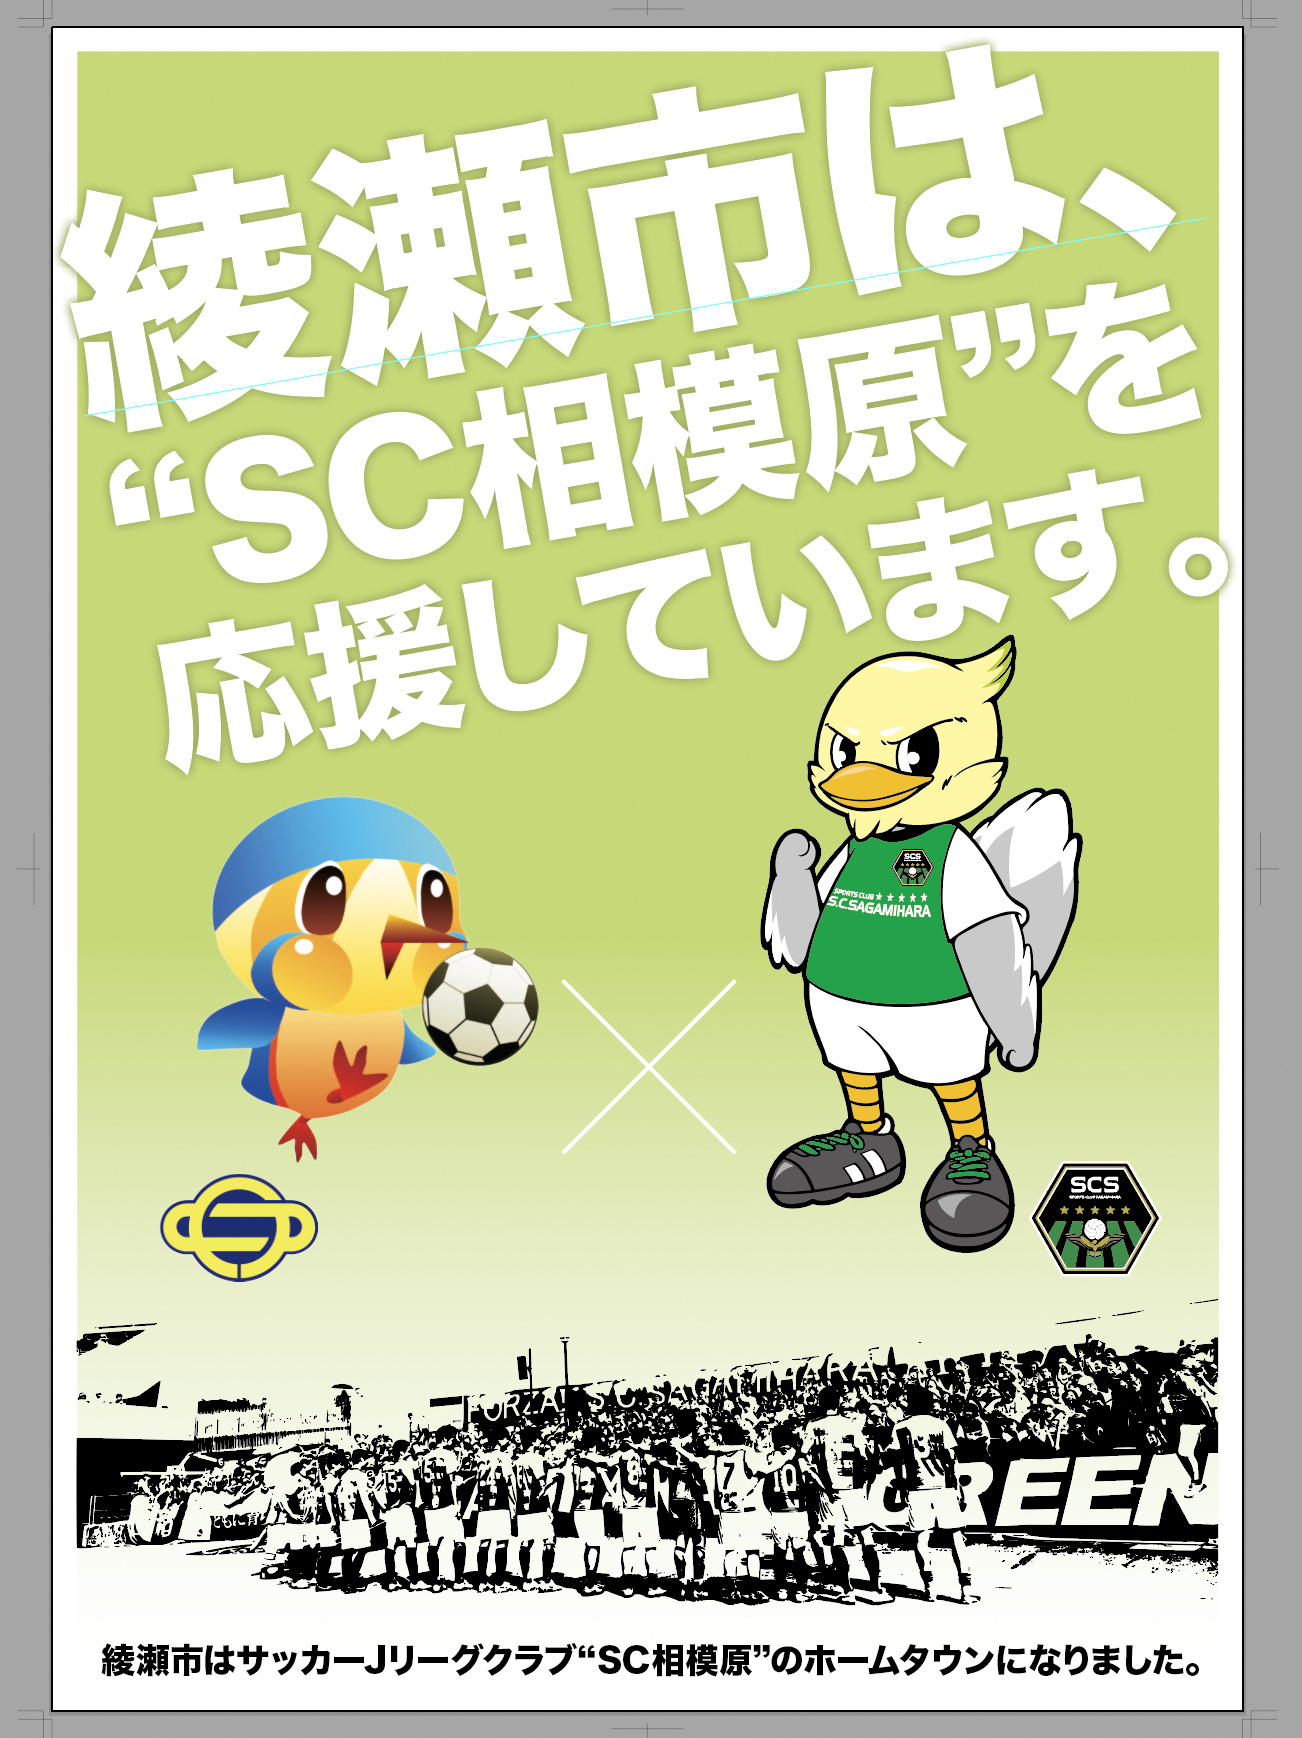 「綾瀬市は、”SC相模原"を応援しています。」の文字とあやぴぃとガミティのイラストが載っているSC相模原応援ポスター